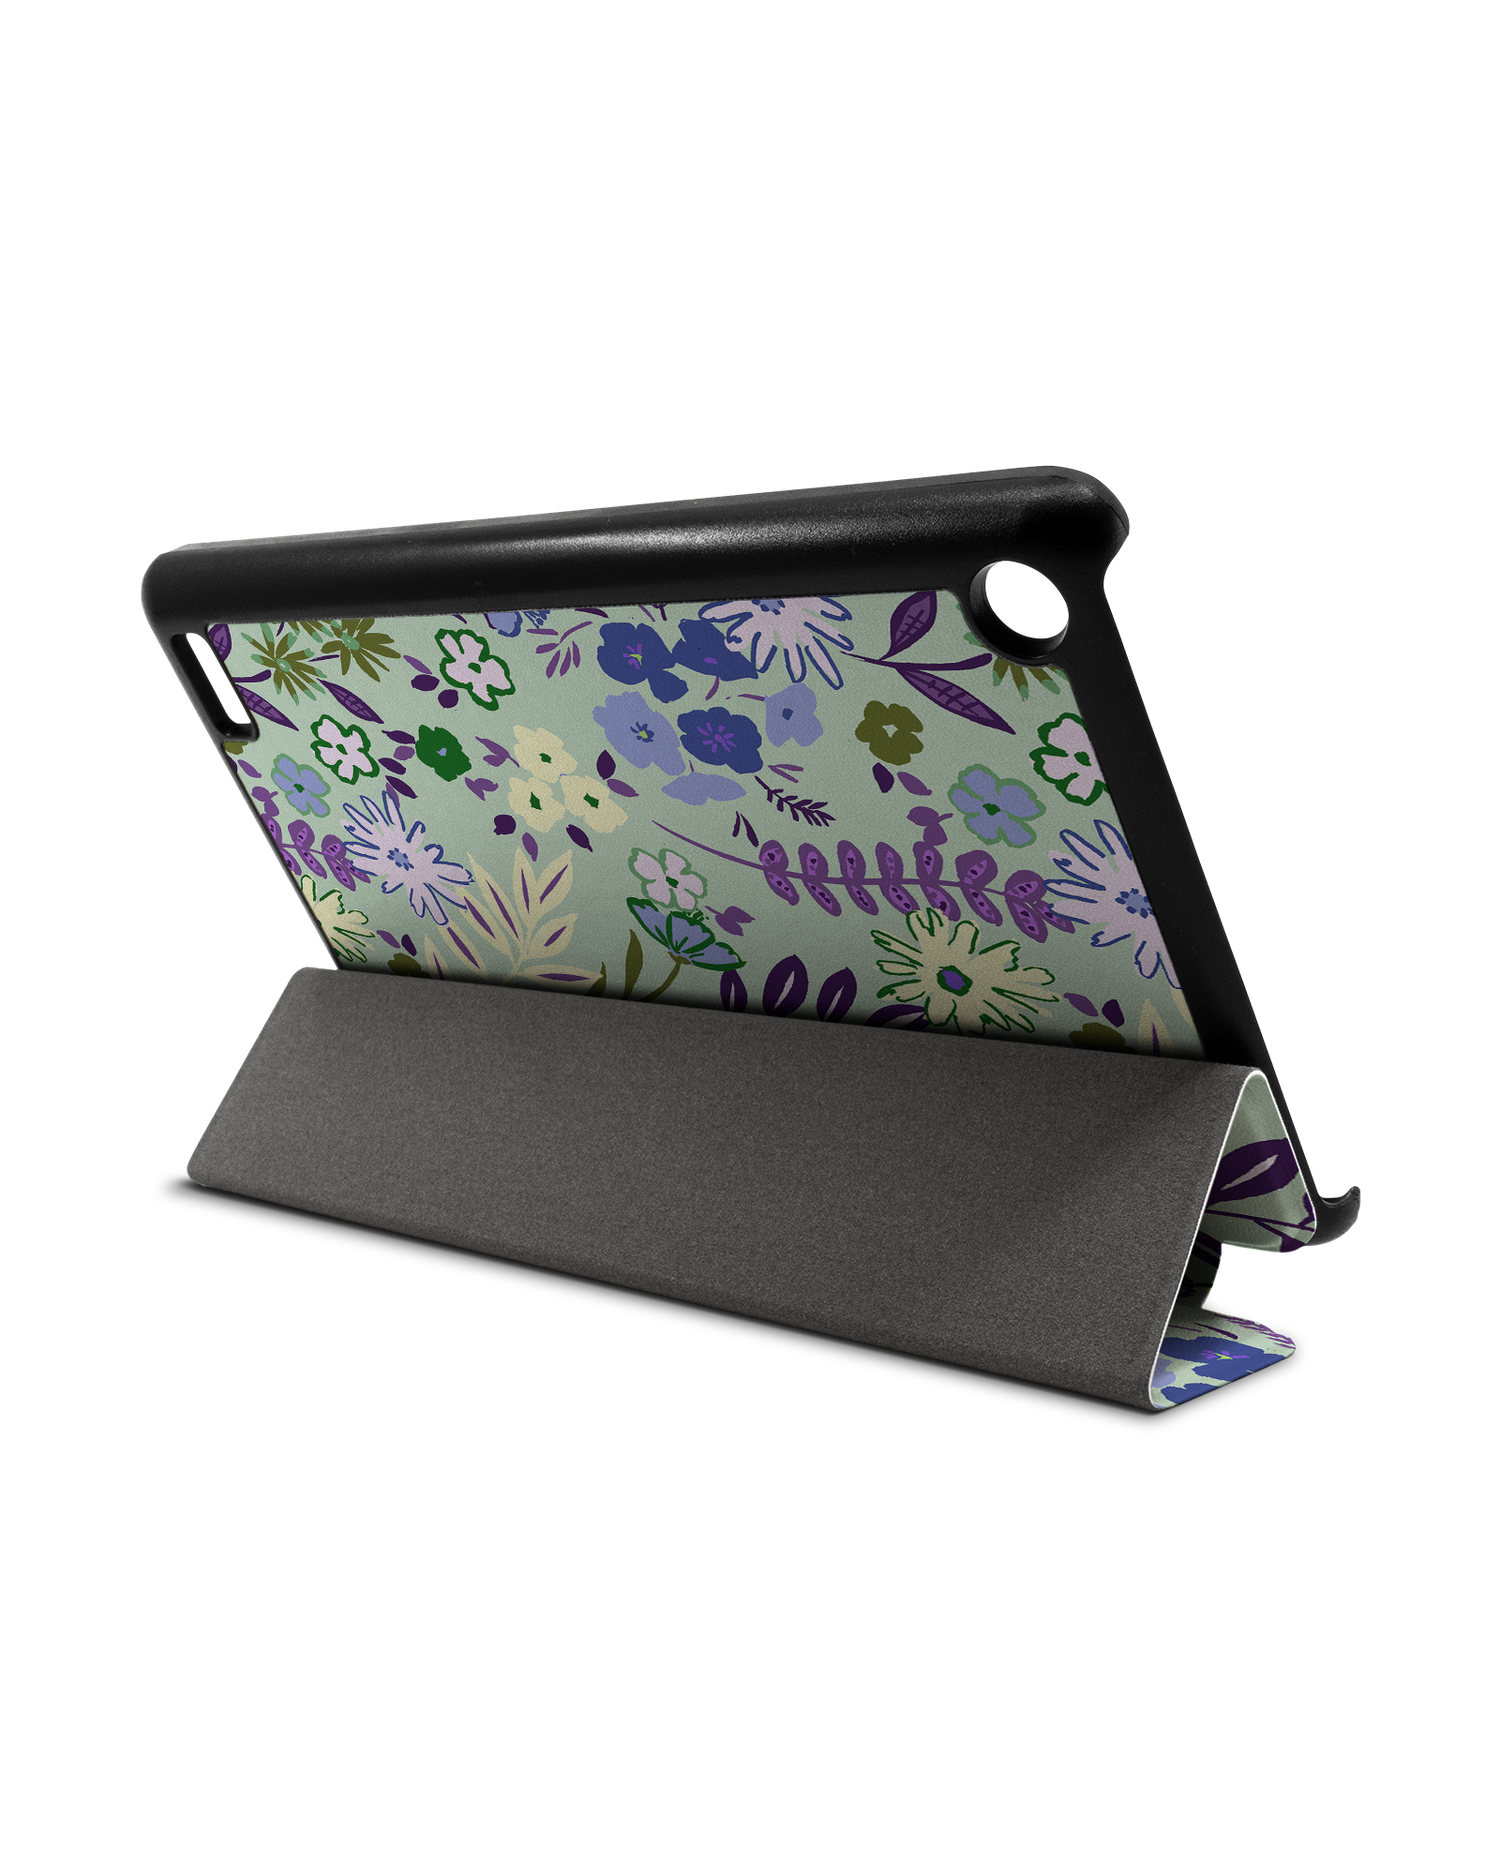 Pretty Purple Flowers Tablet Smart Case für Amazon Fire 7: Aufgestellt im Querformat